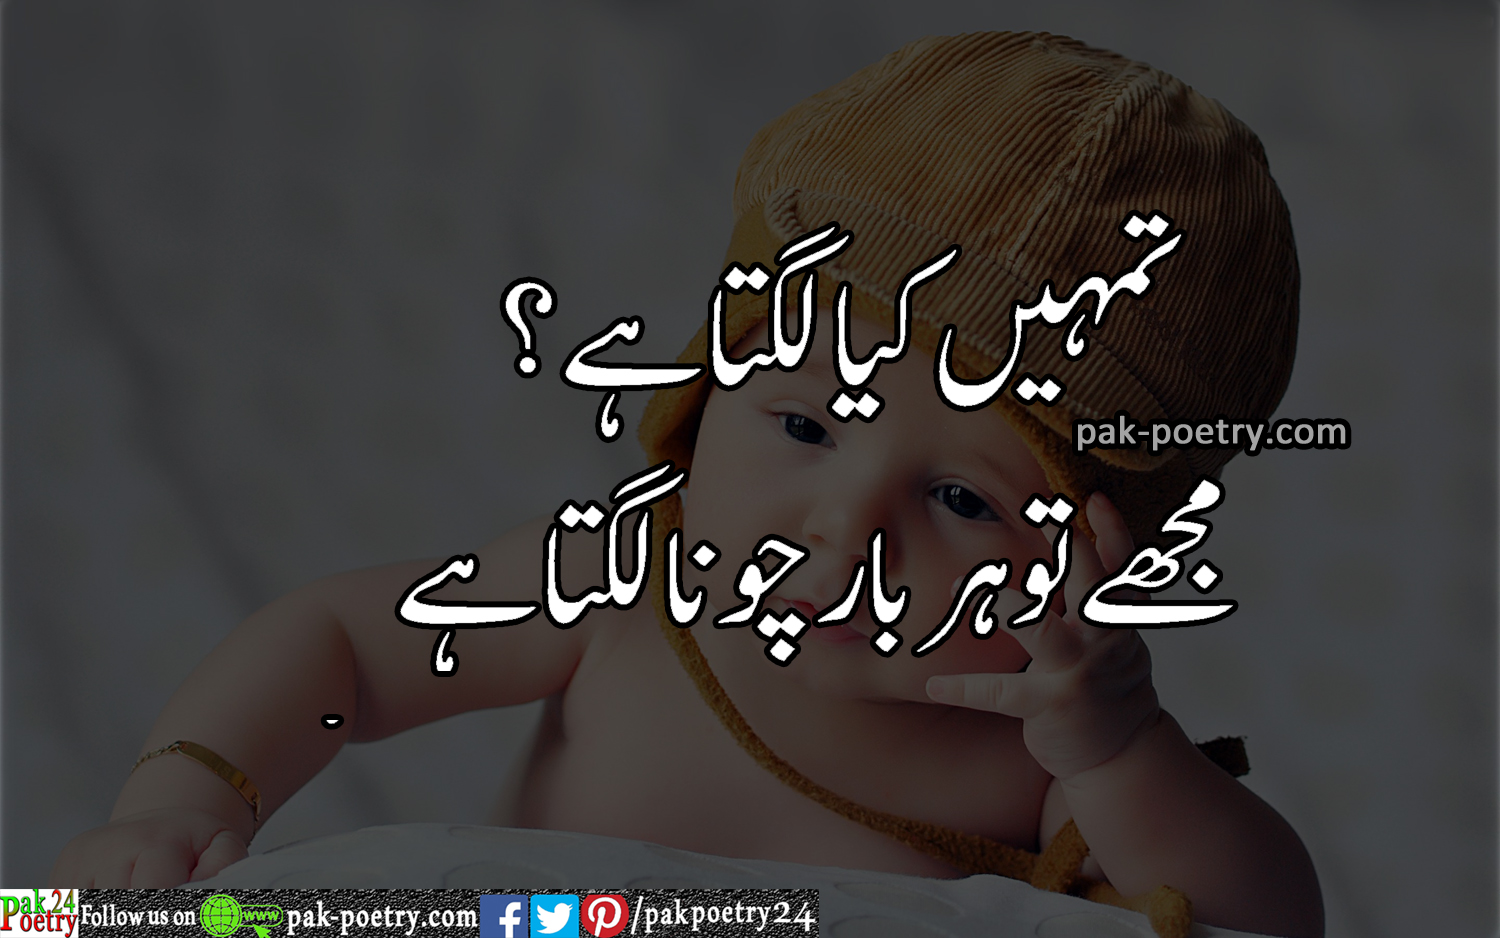 funny poetry in urdu -  tumhy keya lgta hy?